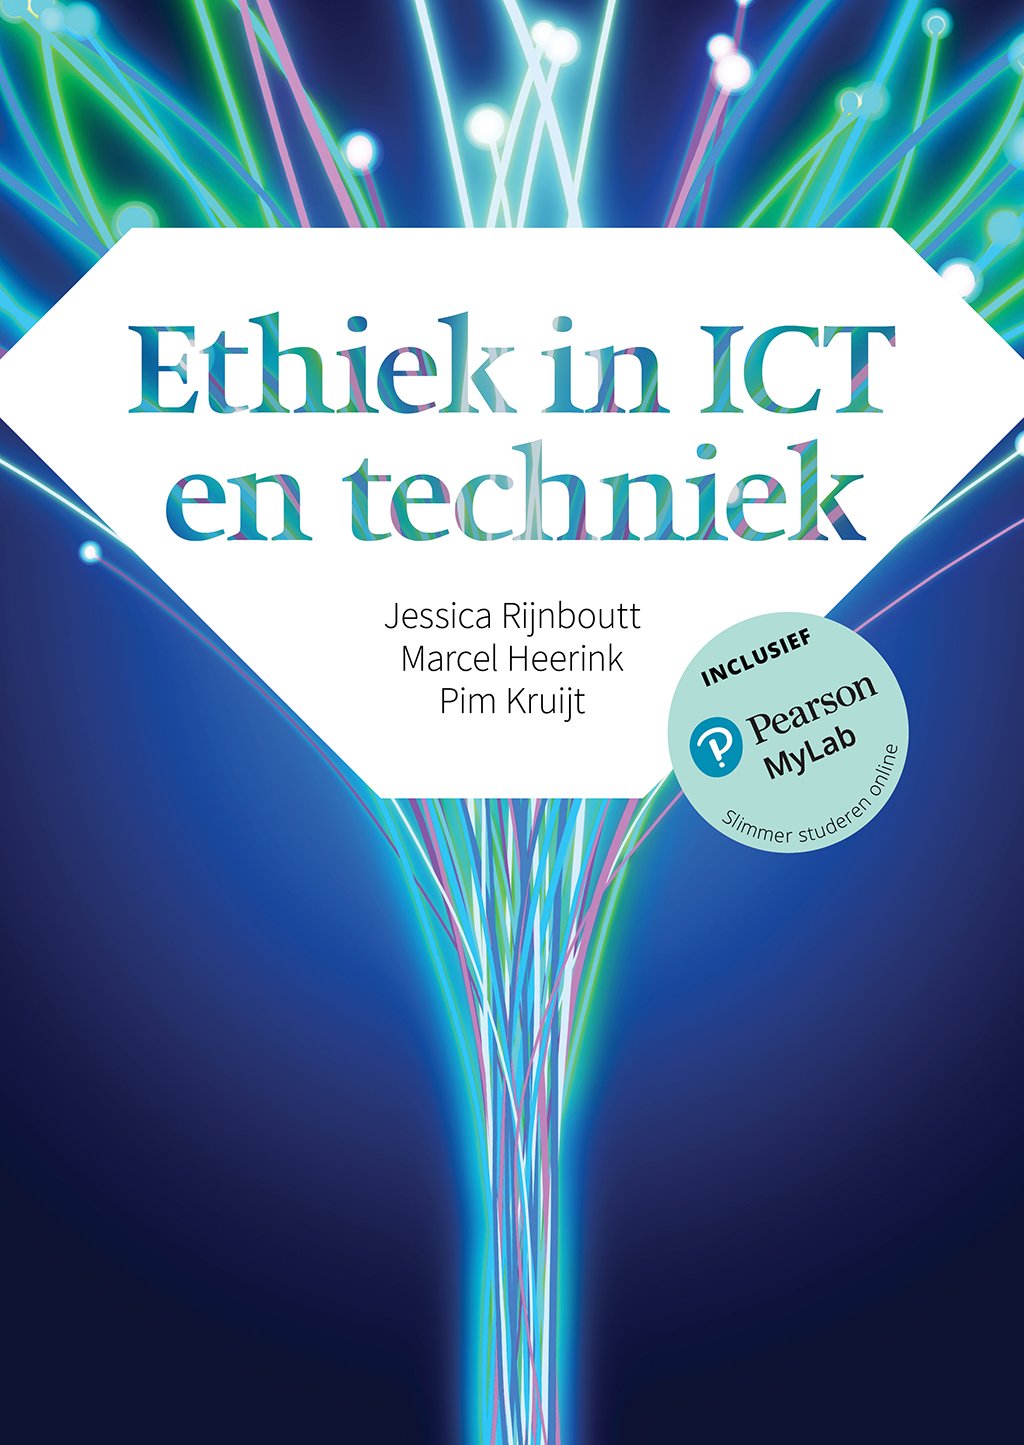 Ethiek in ICT en techniek (Digitaal)